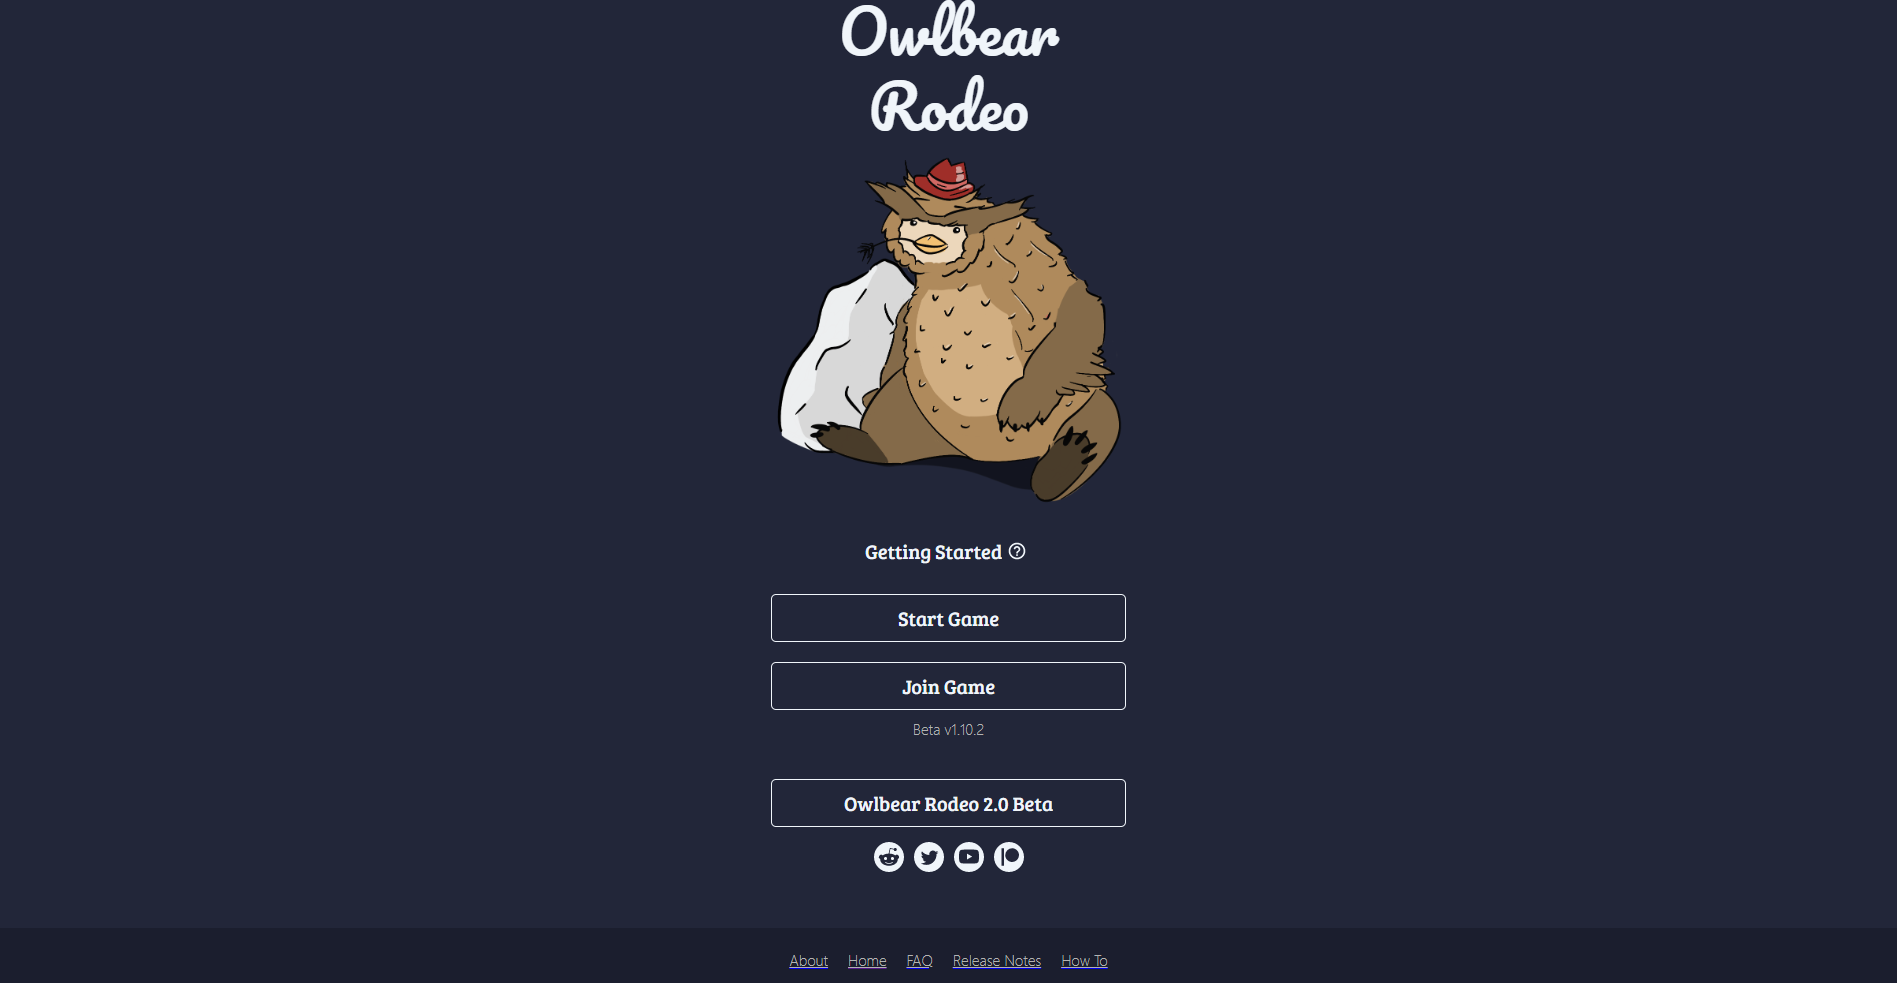 Owlbear Rodeo